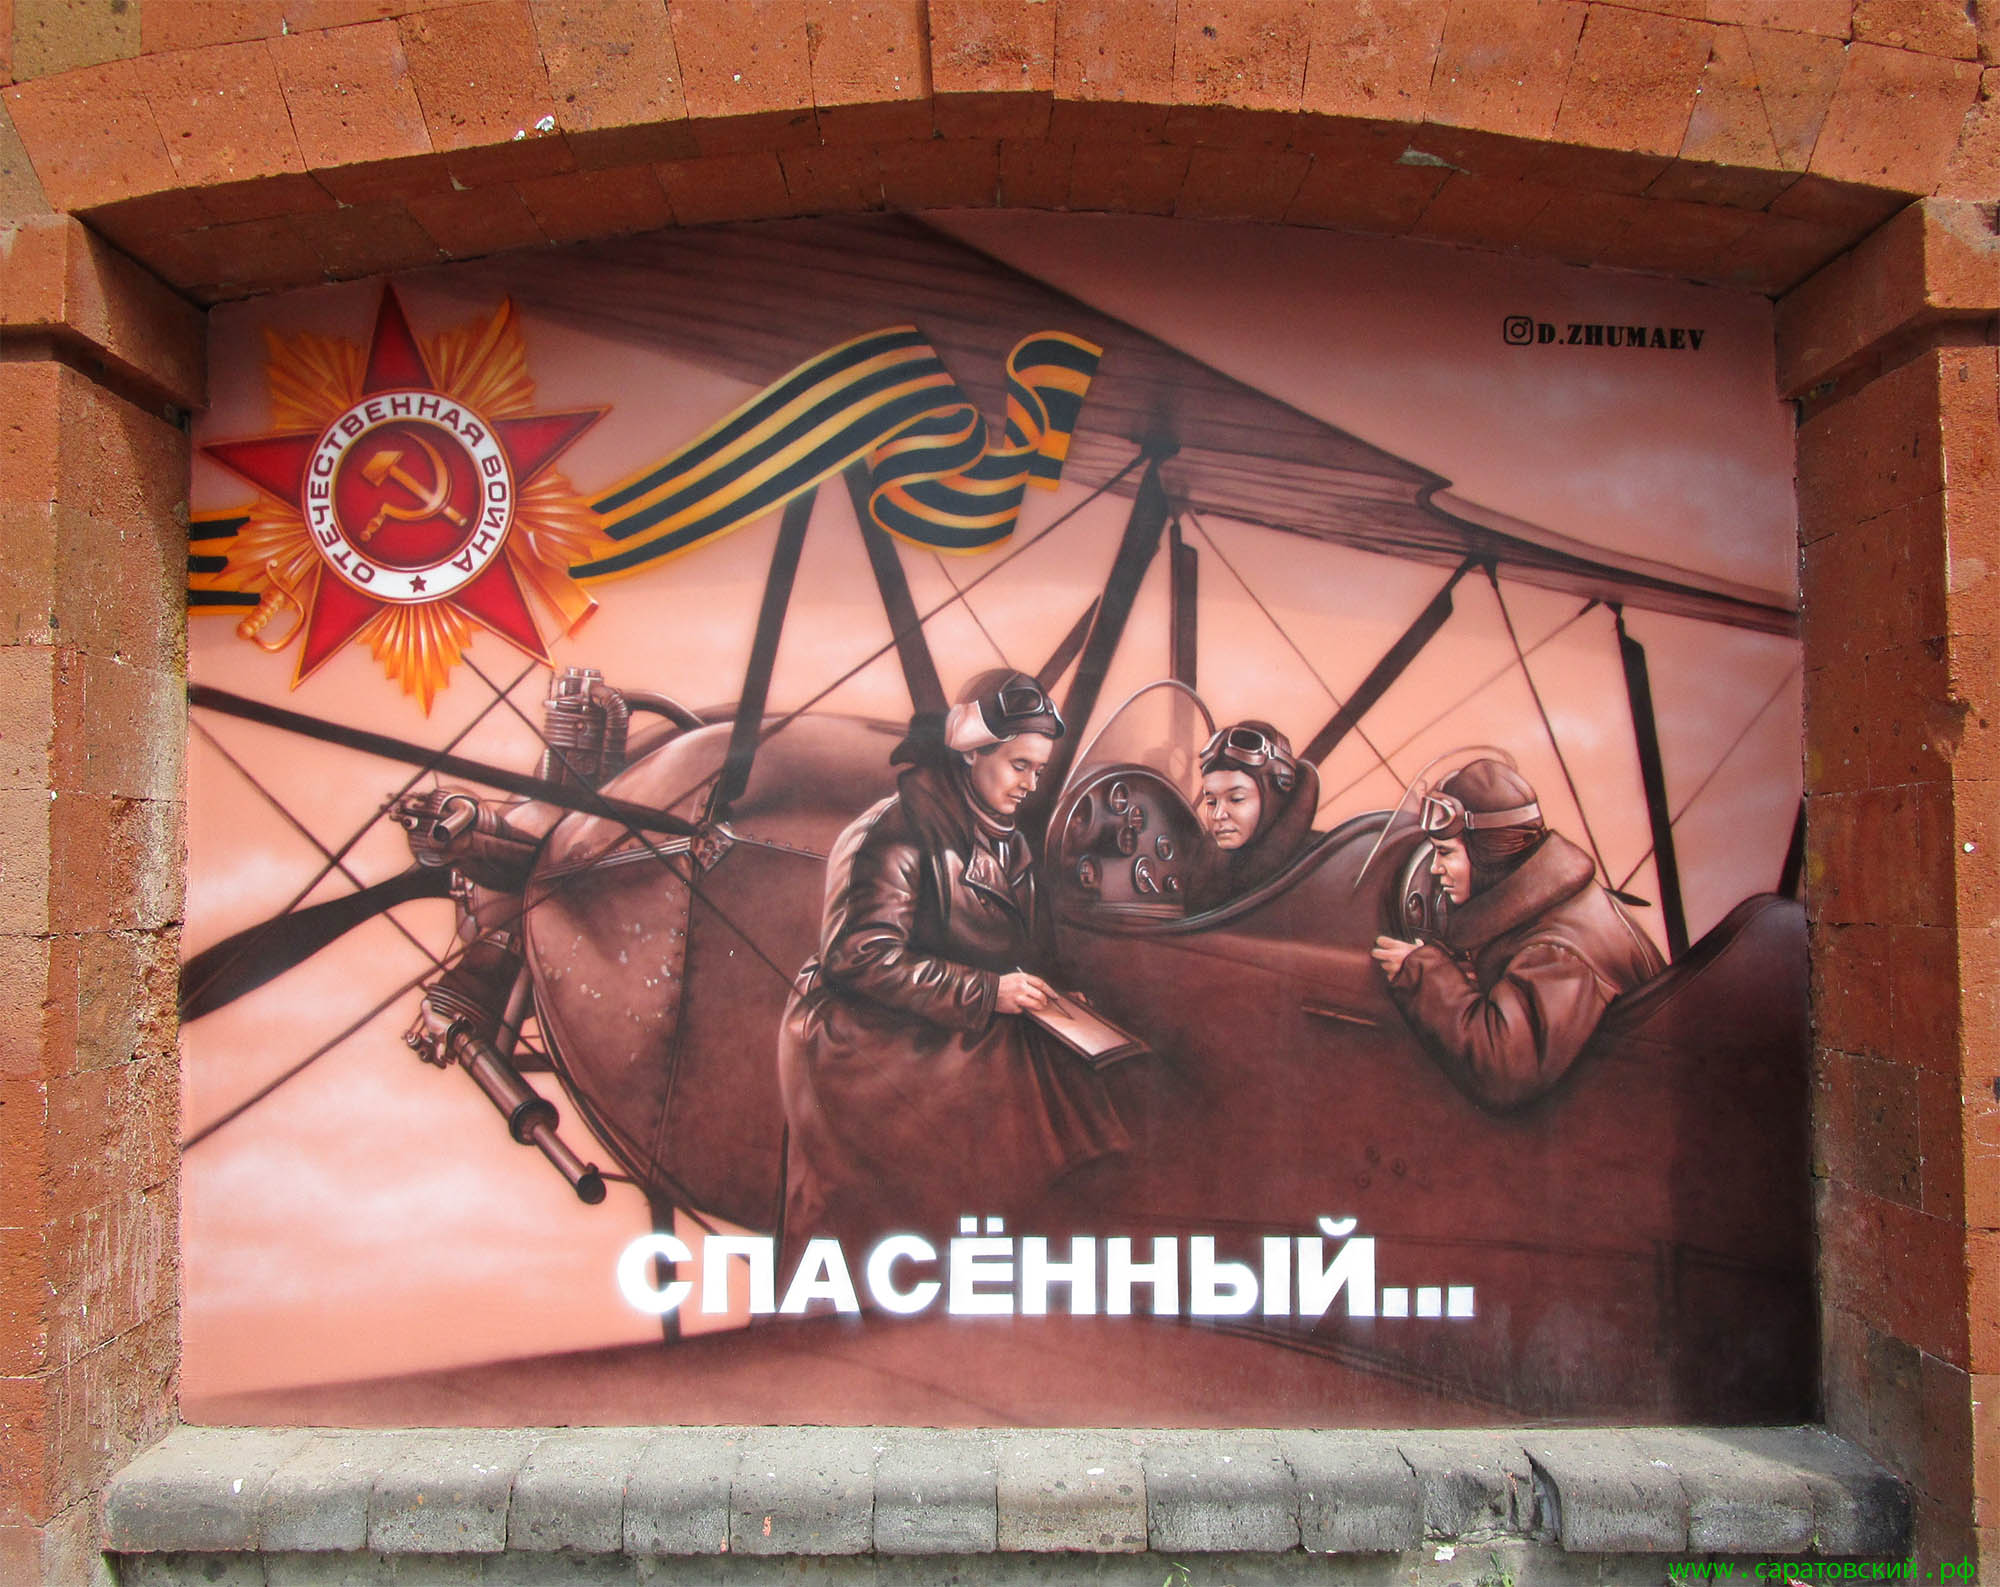 Саратовская набережная, граффити: саратовские лётчицы в годы Великой Отечественной войны